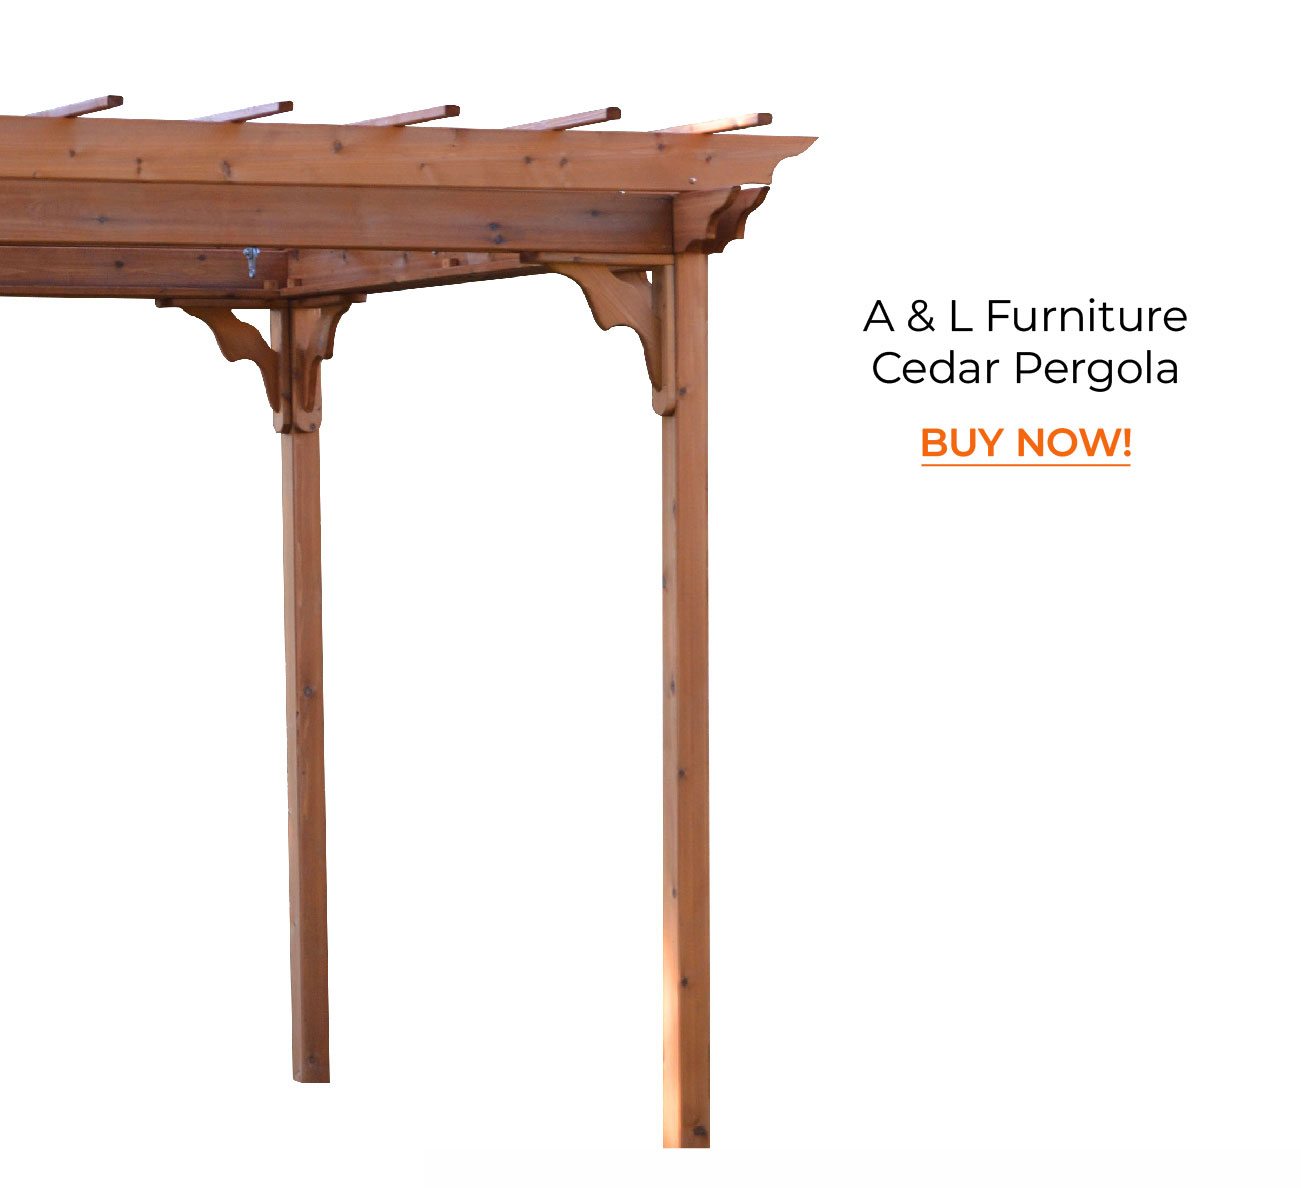 A & L Furniture Cedar Pergola